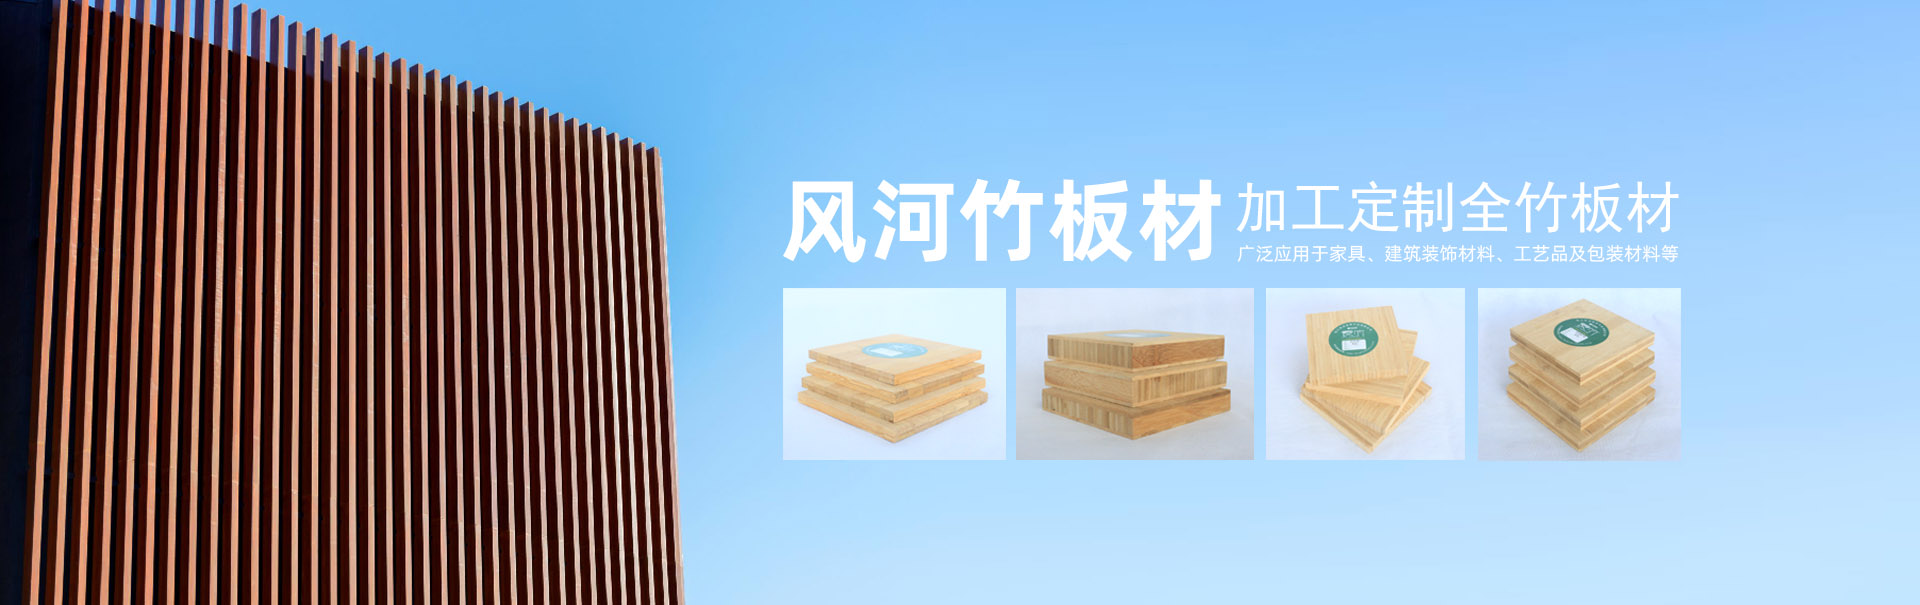 湖南風河竹木科技股份有限公司